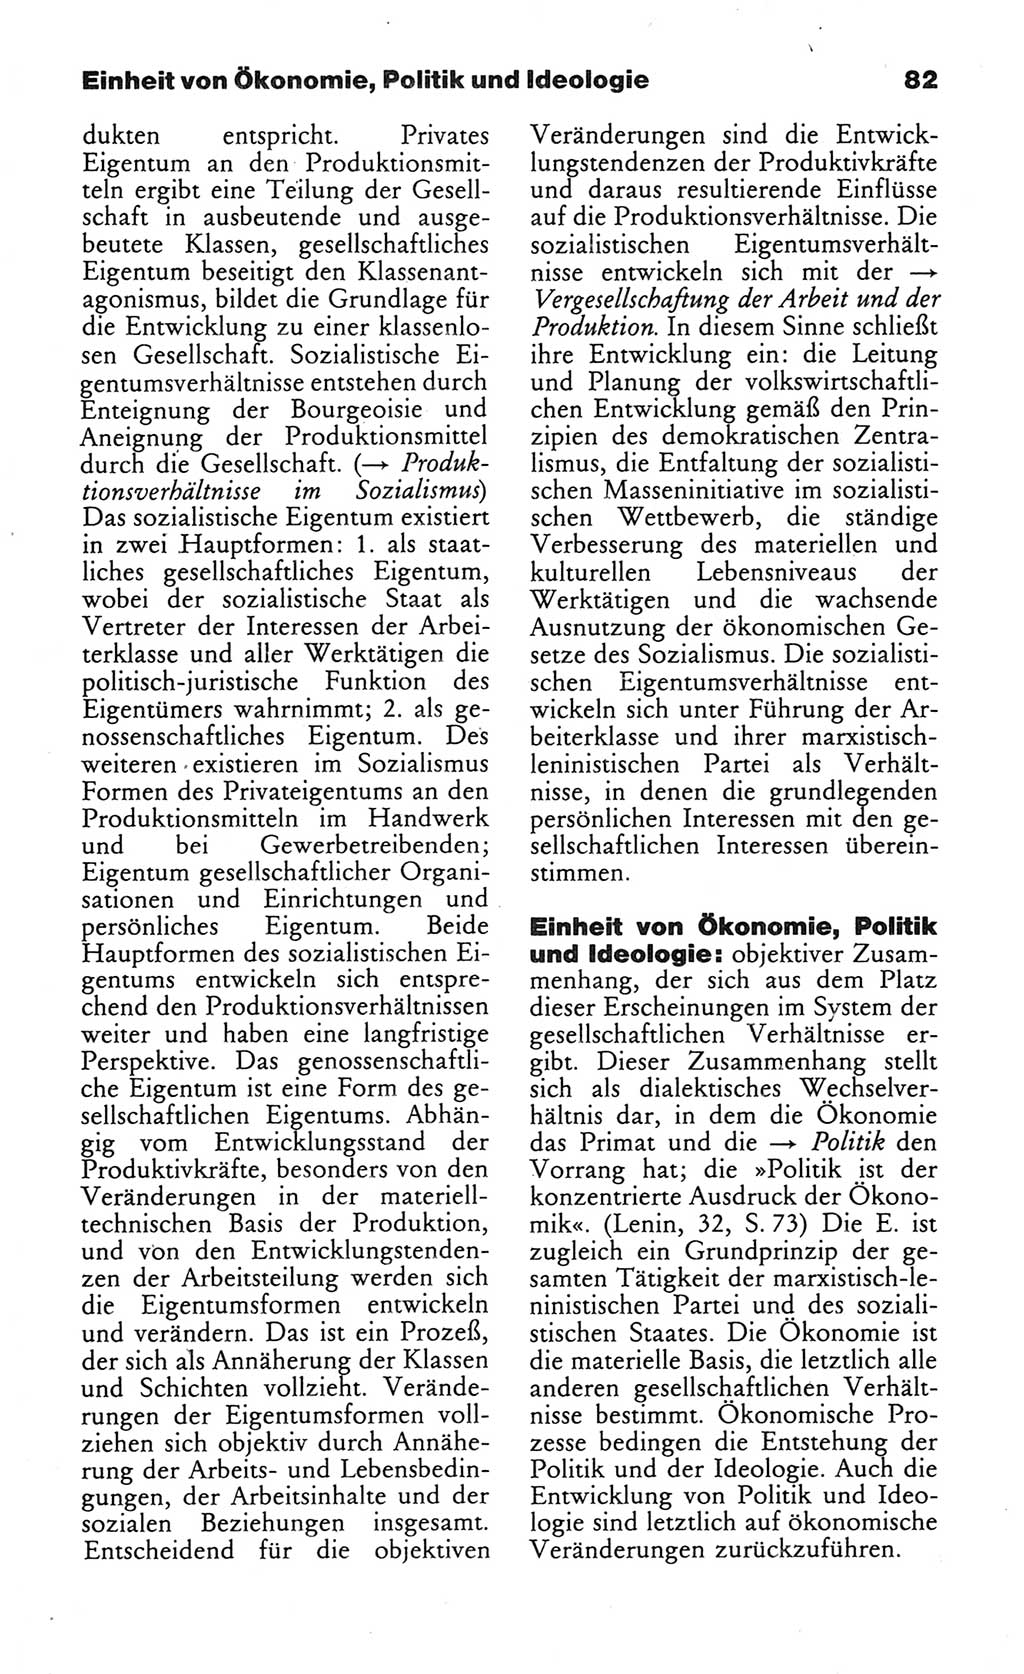 Wörterbuch des wissenschaftlichen Kommunismus [Deutsche Demokratische Republik (DDR)] 1984, Seite 82 (Wb. wiss. Komm. DDR 1984, S. 82)